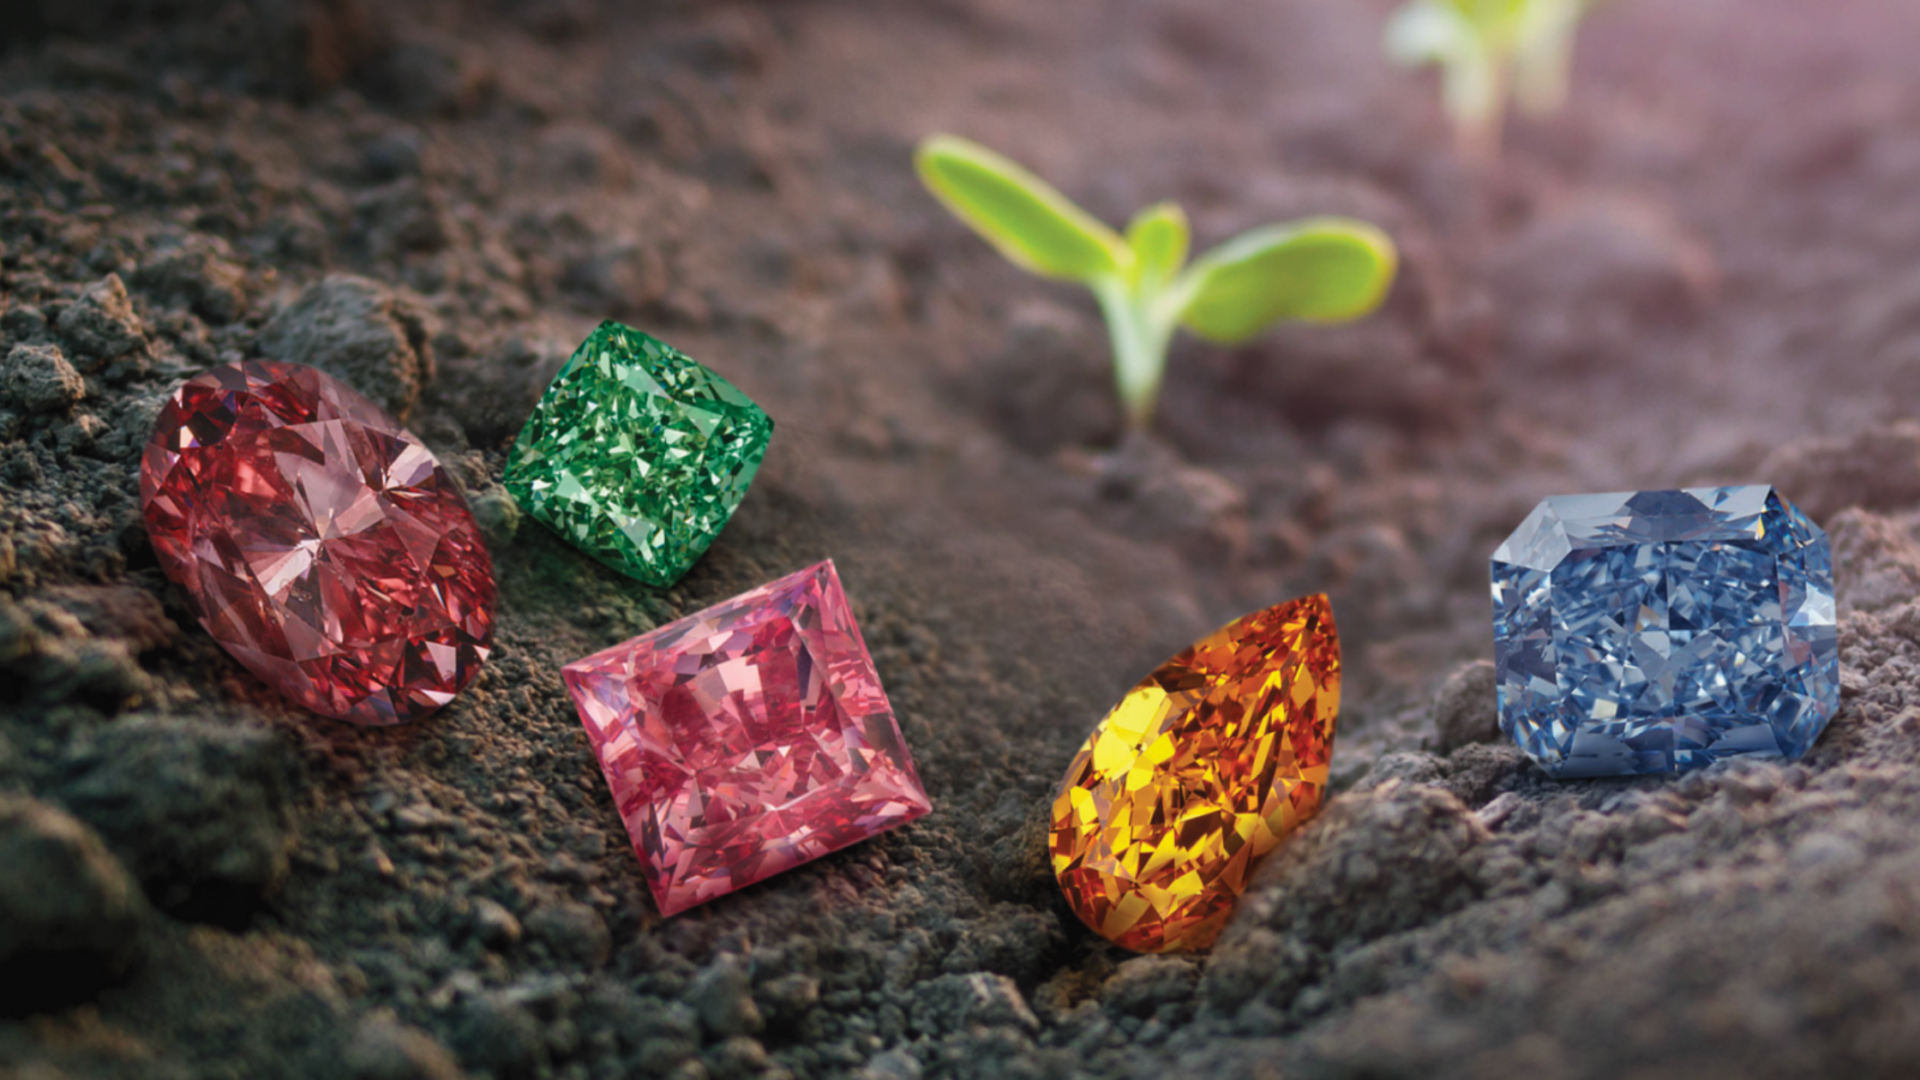 6 Most Expensive Fancy Color Diamonds